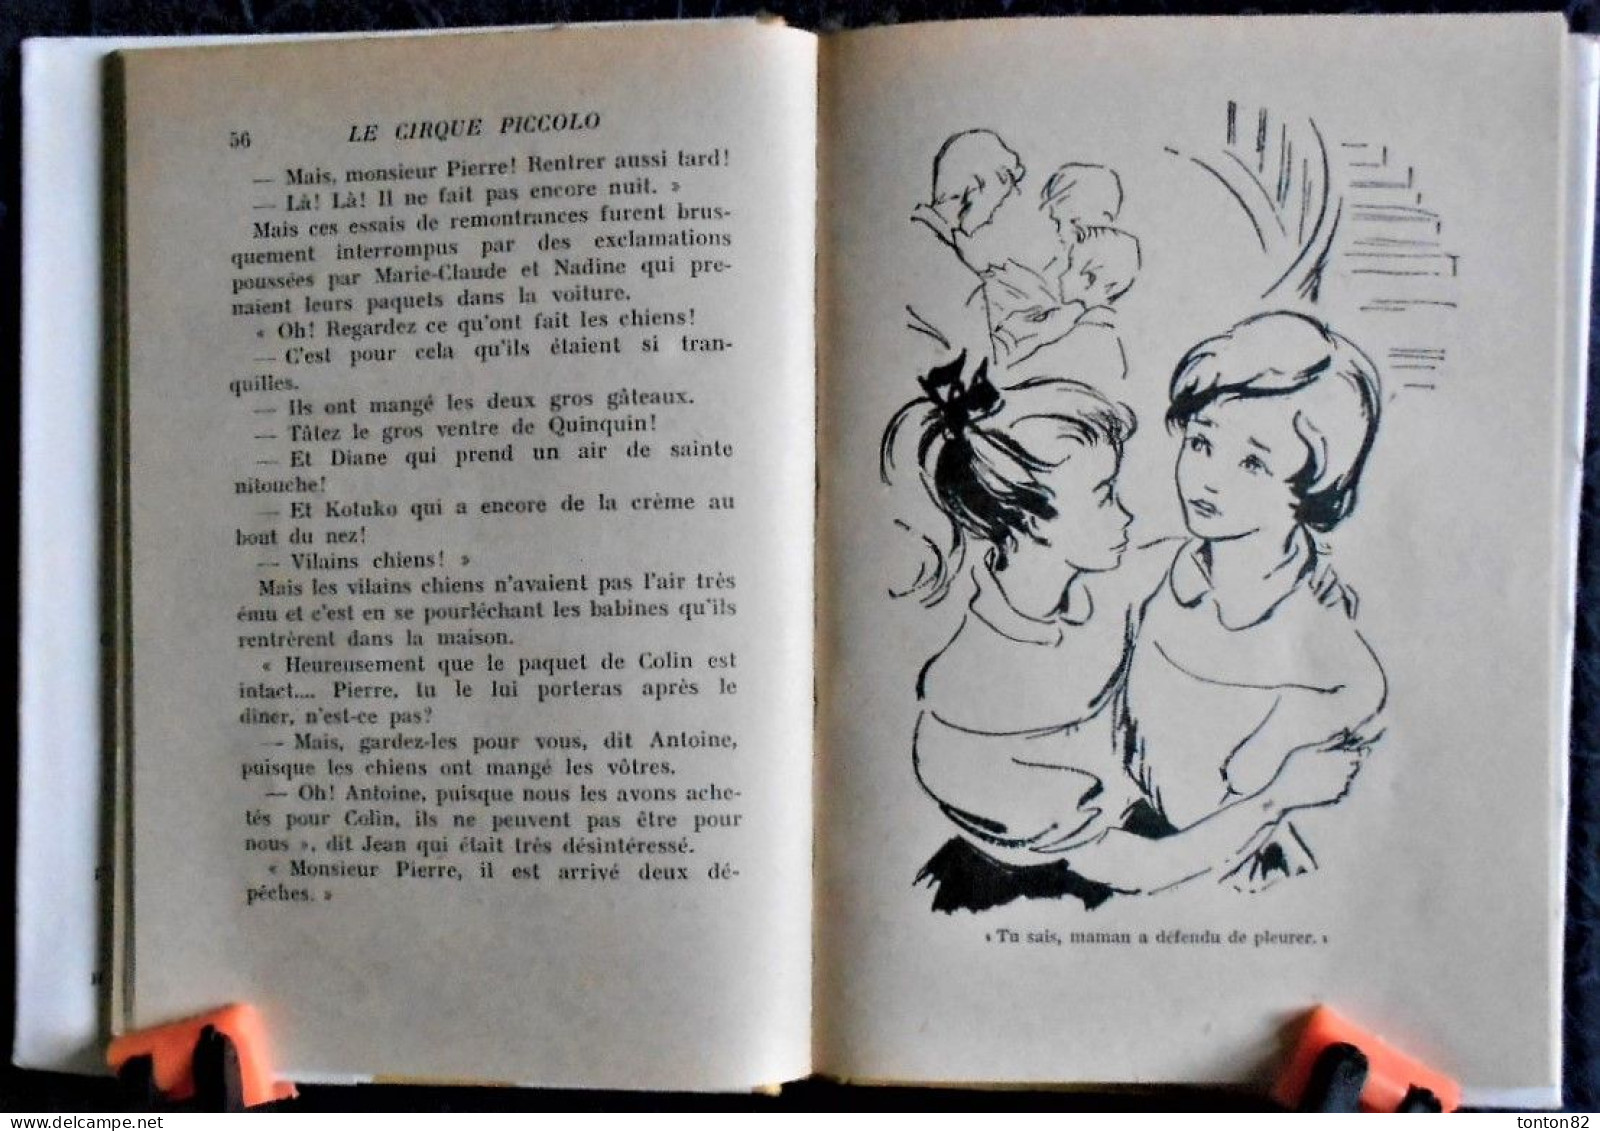 M. du Genestoux  - Le cirque Piccolo - Hachette - Bibliothèque Rose - ( 1955 ) - Avec sa jaquette .